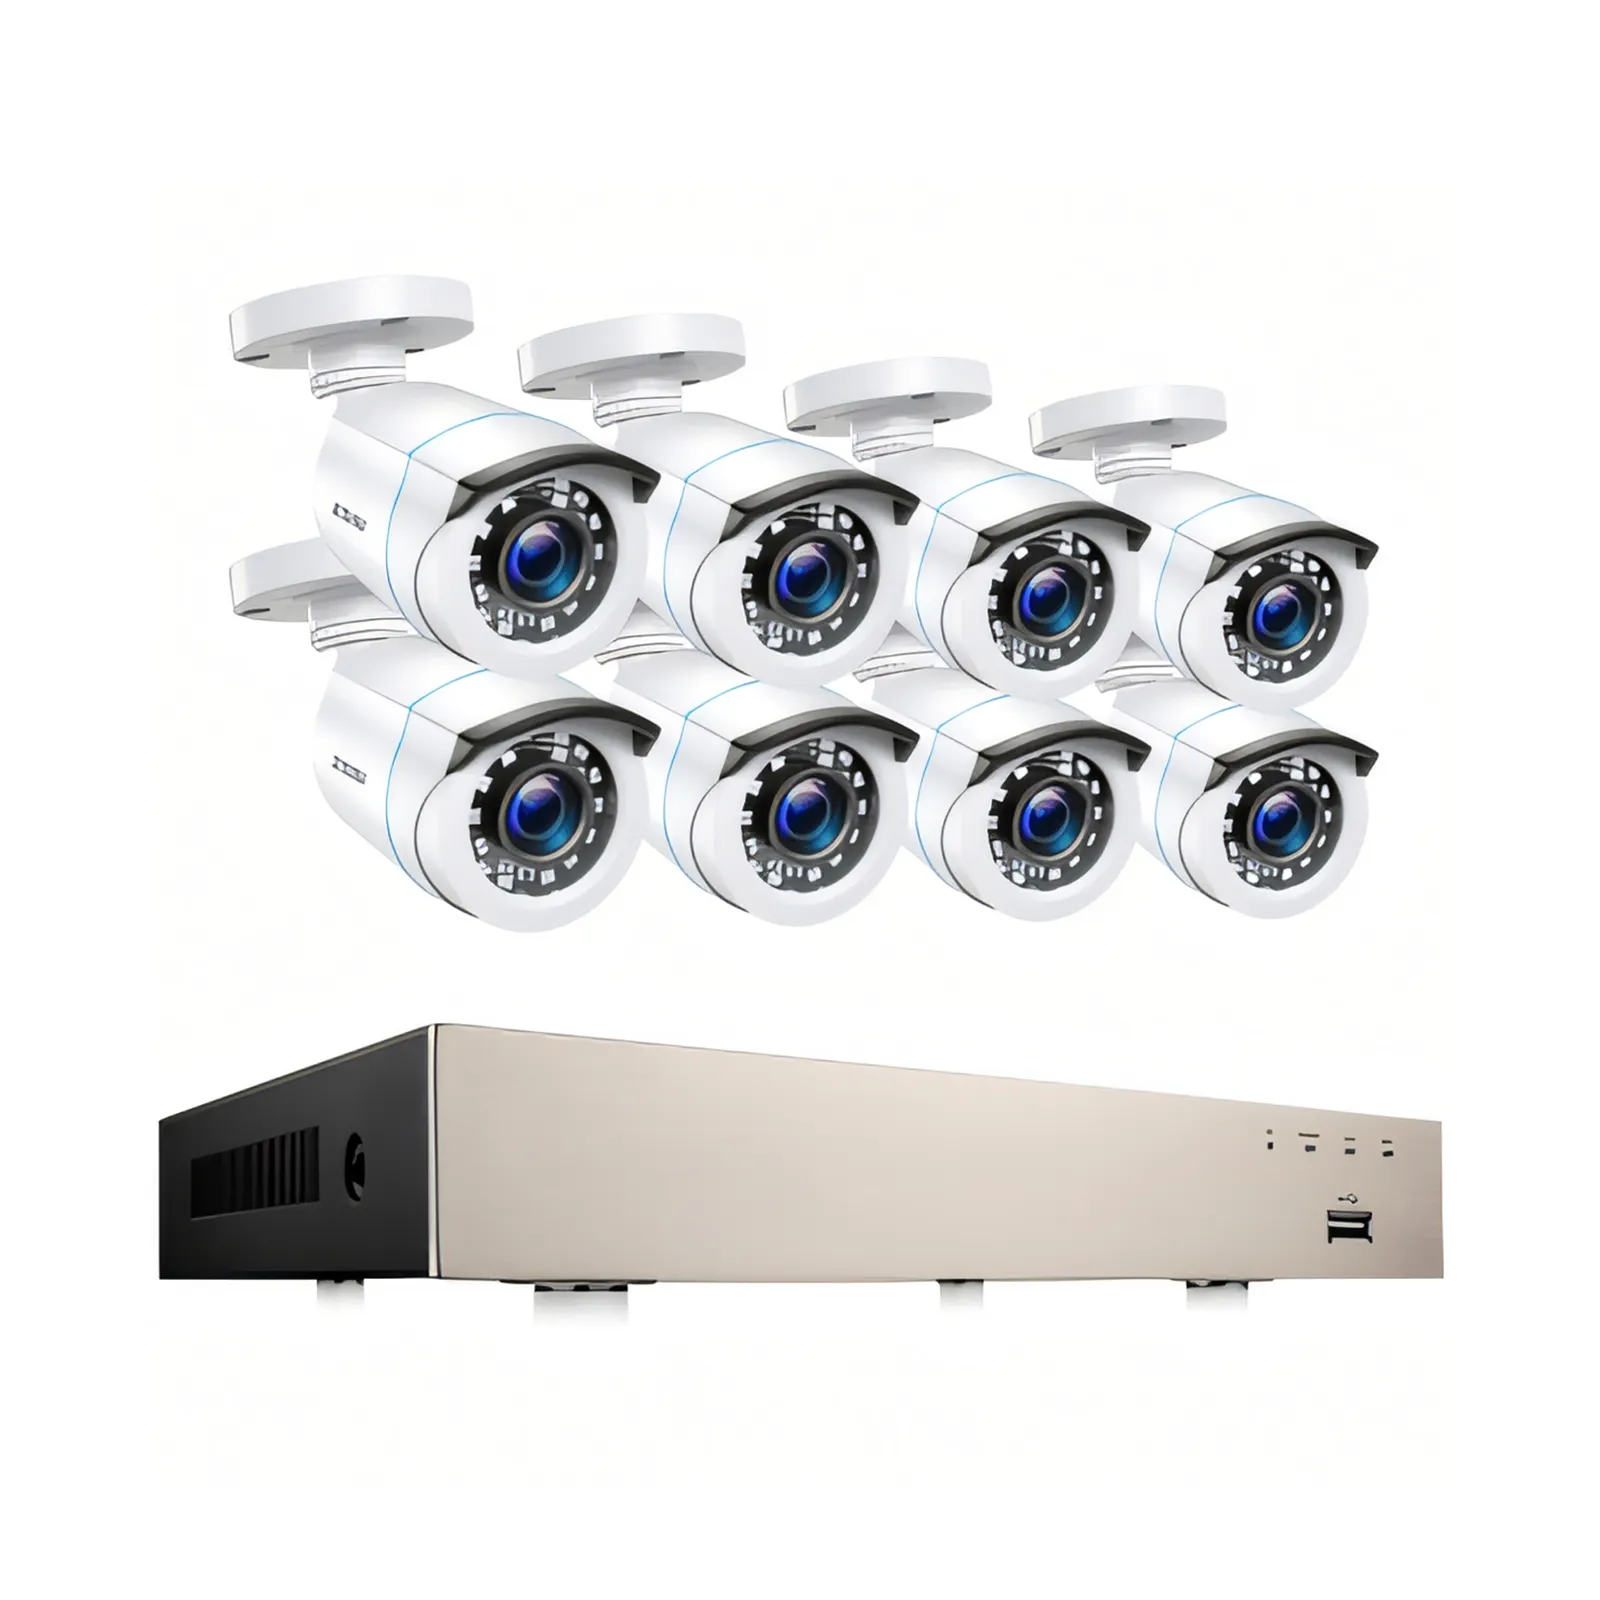 सस्ते सीसीटीवी डीवीआर कैमरा सिस्टम डीवीआर डीवीआर इन्फ्रारेड एएचडी सुरक्षा प्रणाली किट